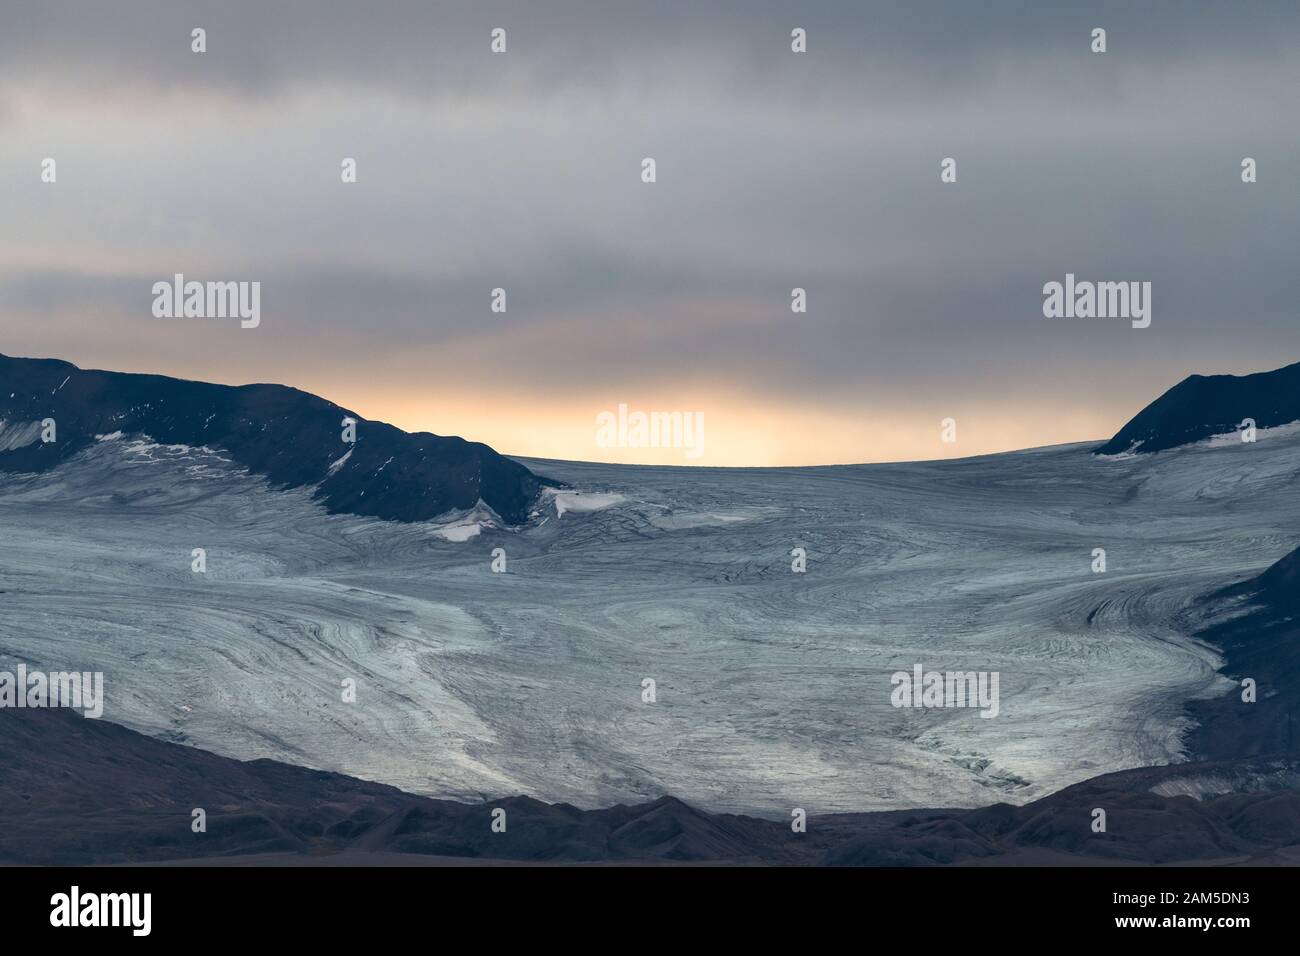 La luce del sole sorge dopo un grande ghiacciaio - paesaggio tremendo nell'Artico Foto Stock